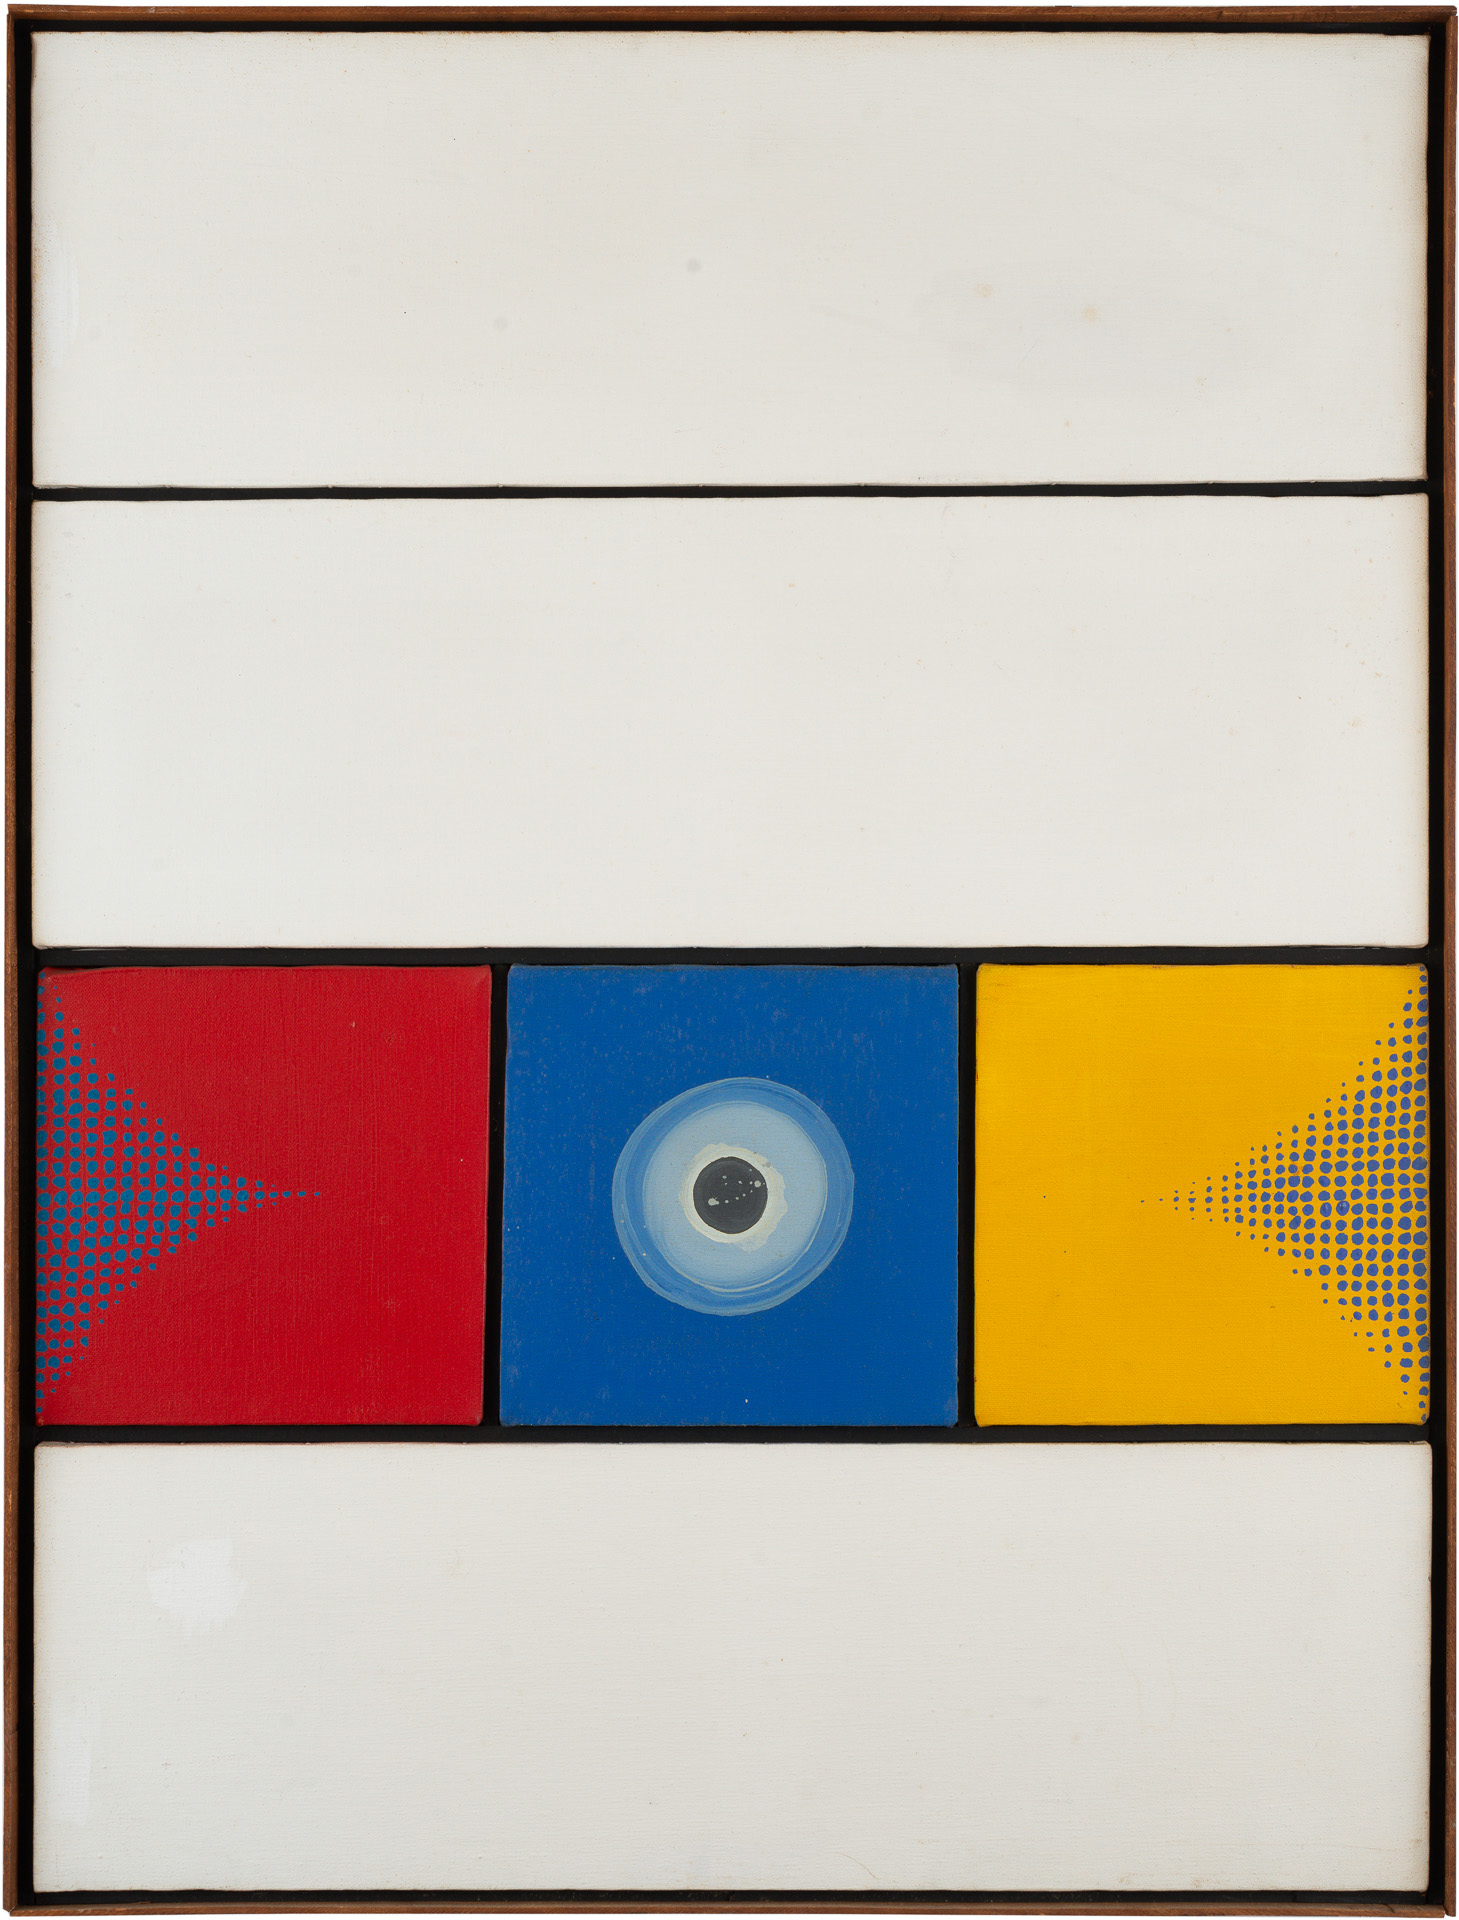 近藤竜男〈Untitled〉, 油彩・アクリル・カンヴァス, 86.0×65.5, 1965